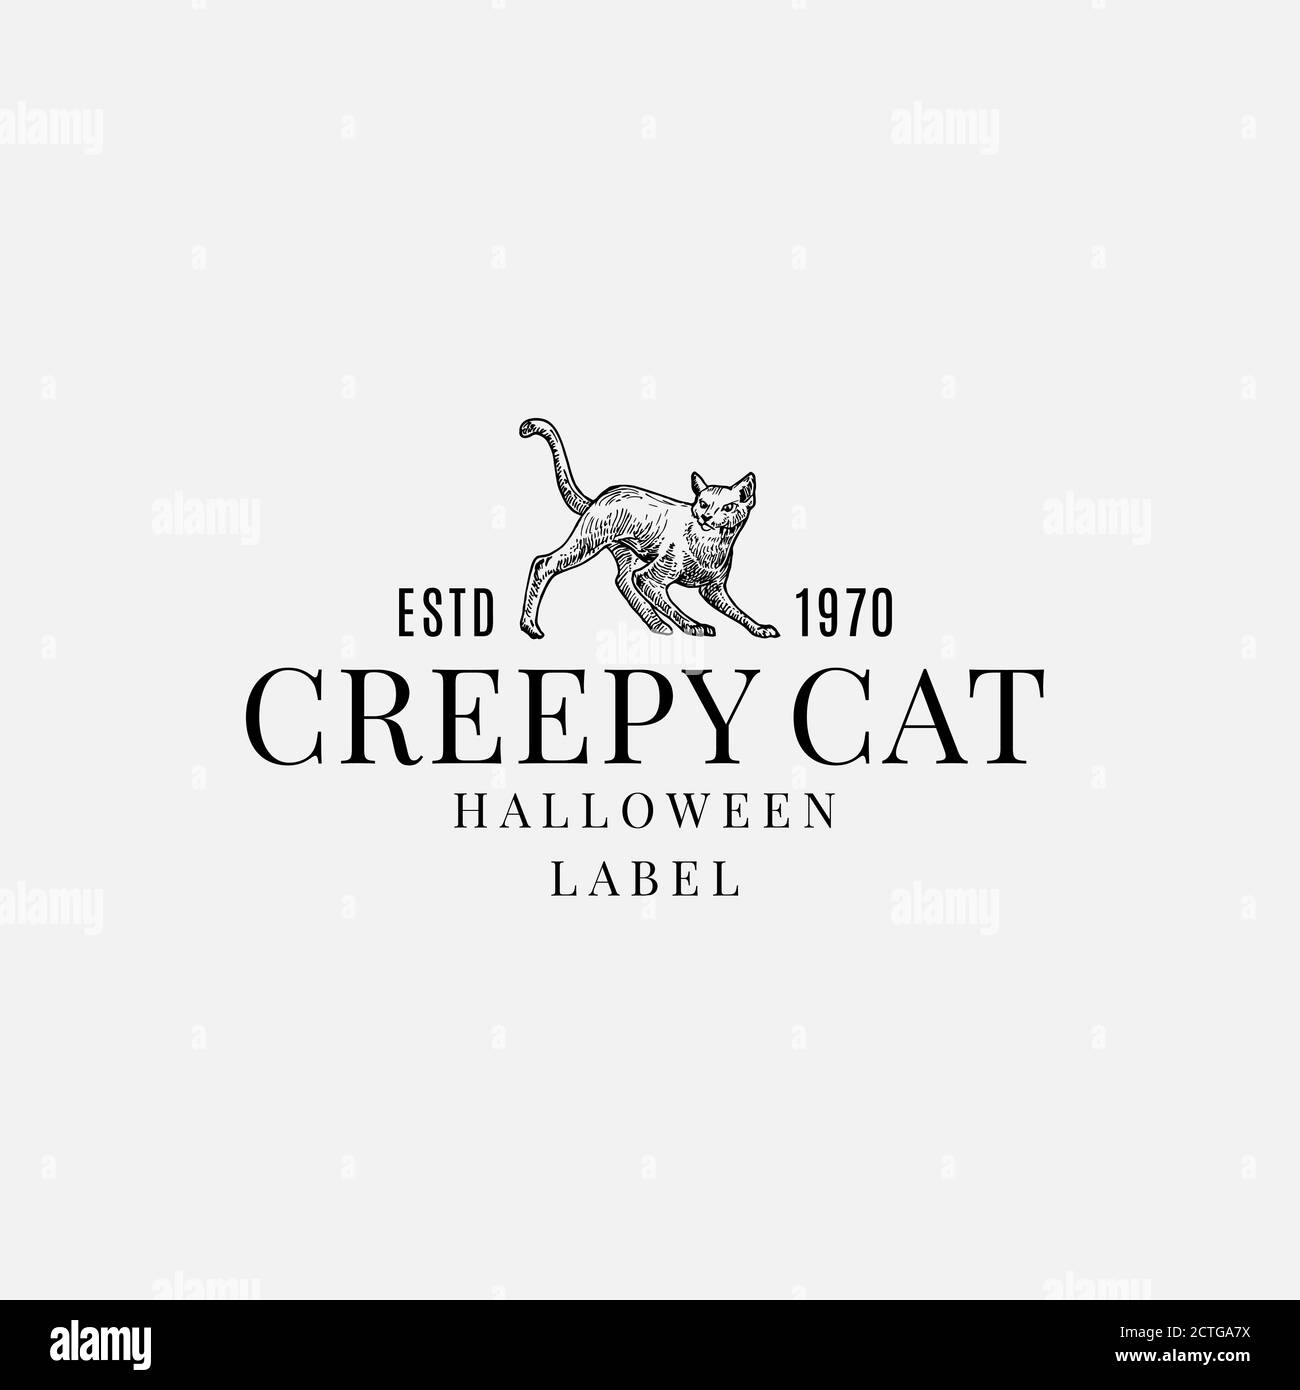 Modèle d'étiquette ou de logo d'Halloween de qualité supérieure. Symbole d'esquisse de chat Creepy dessiné à la main et Typographie rétro élégante. Illustration de Vecteur